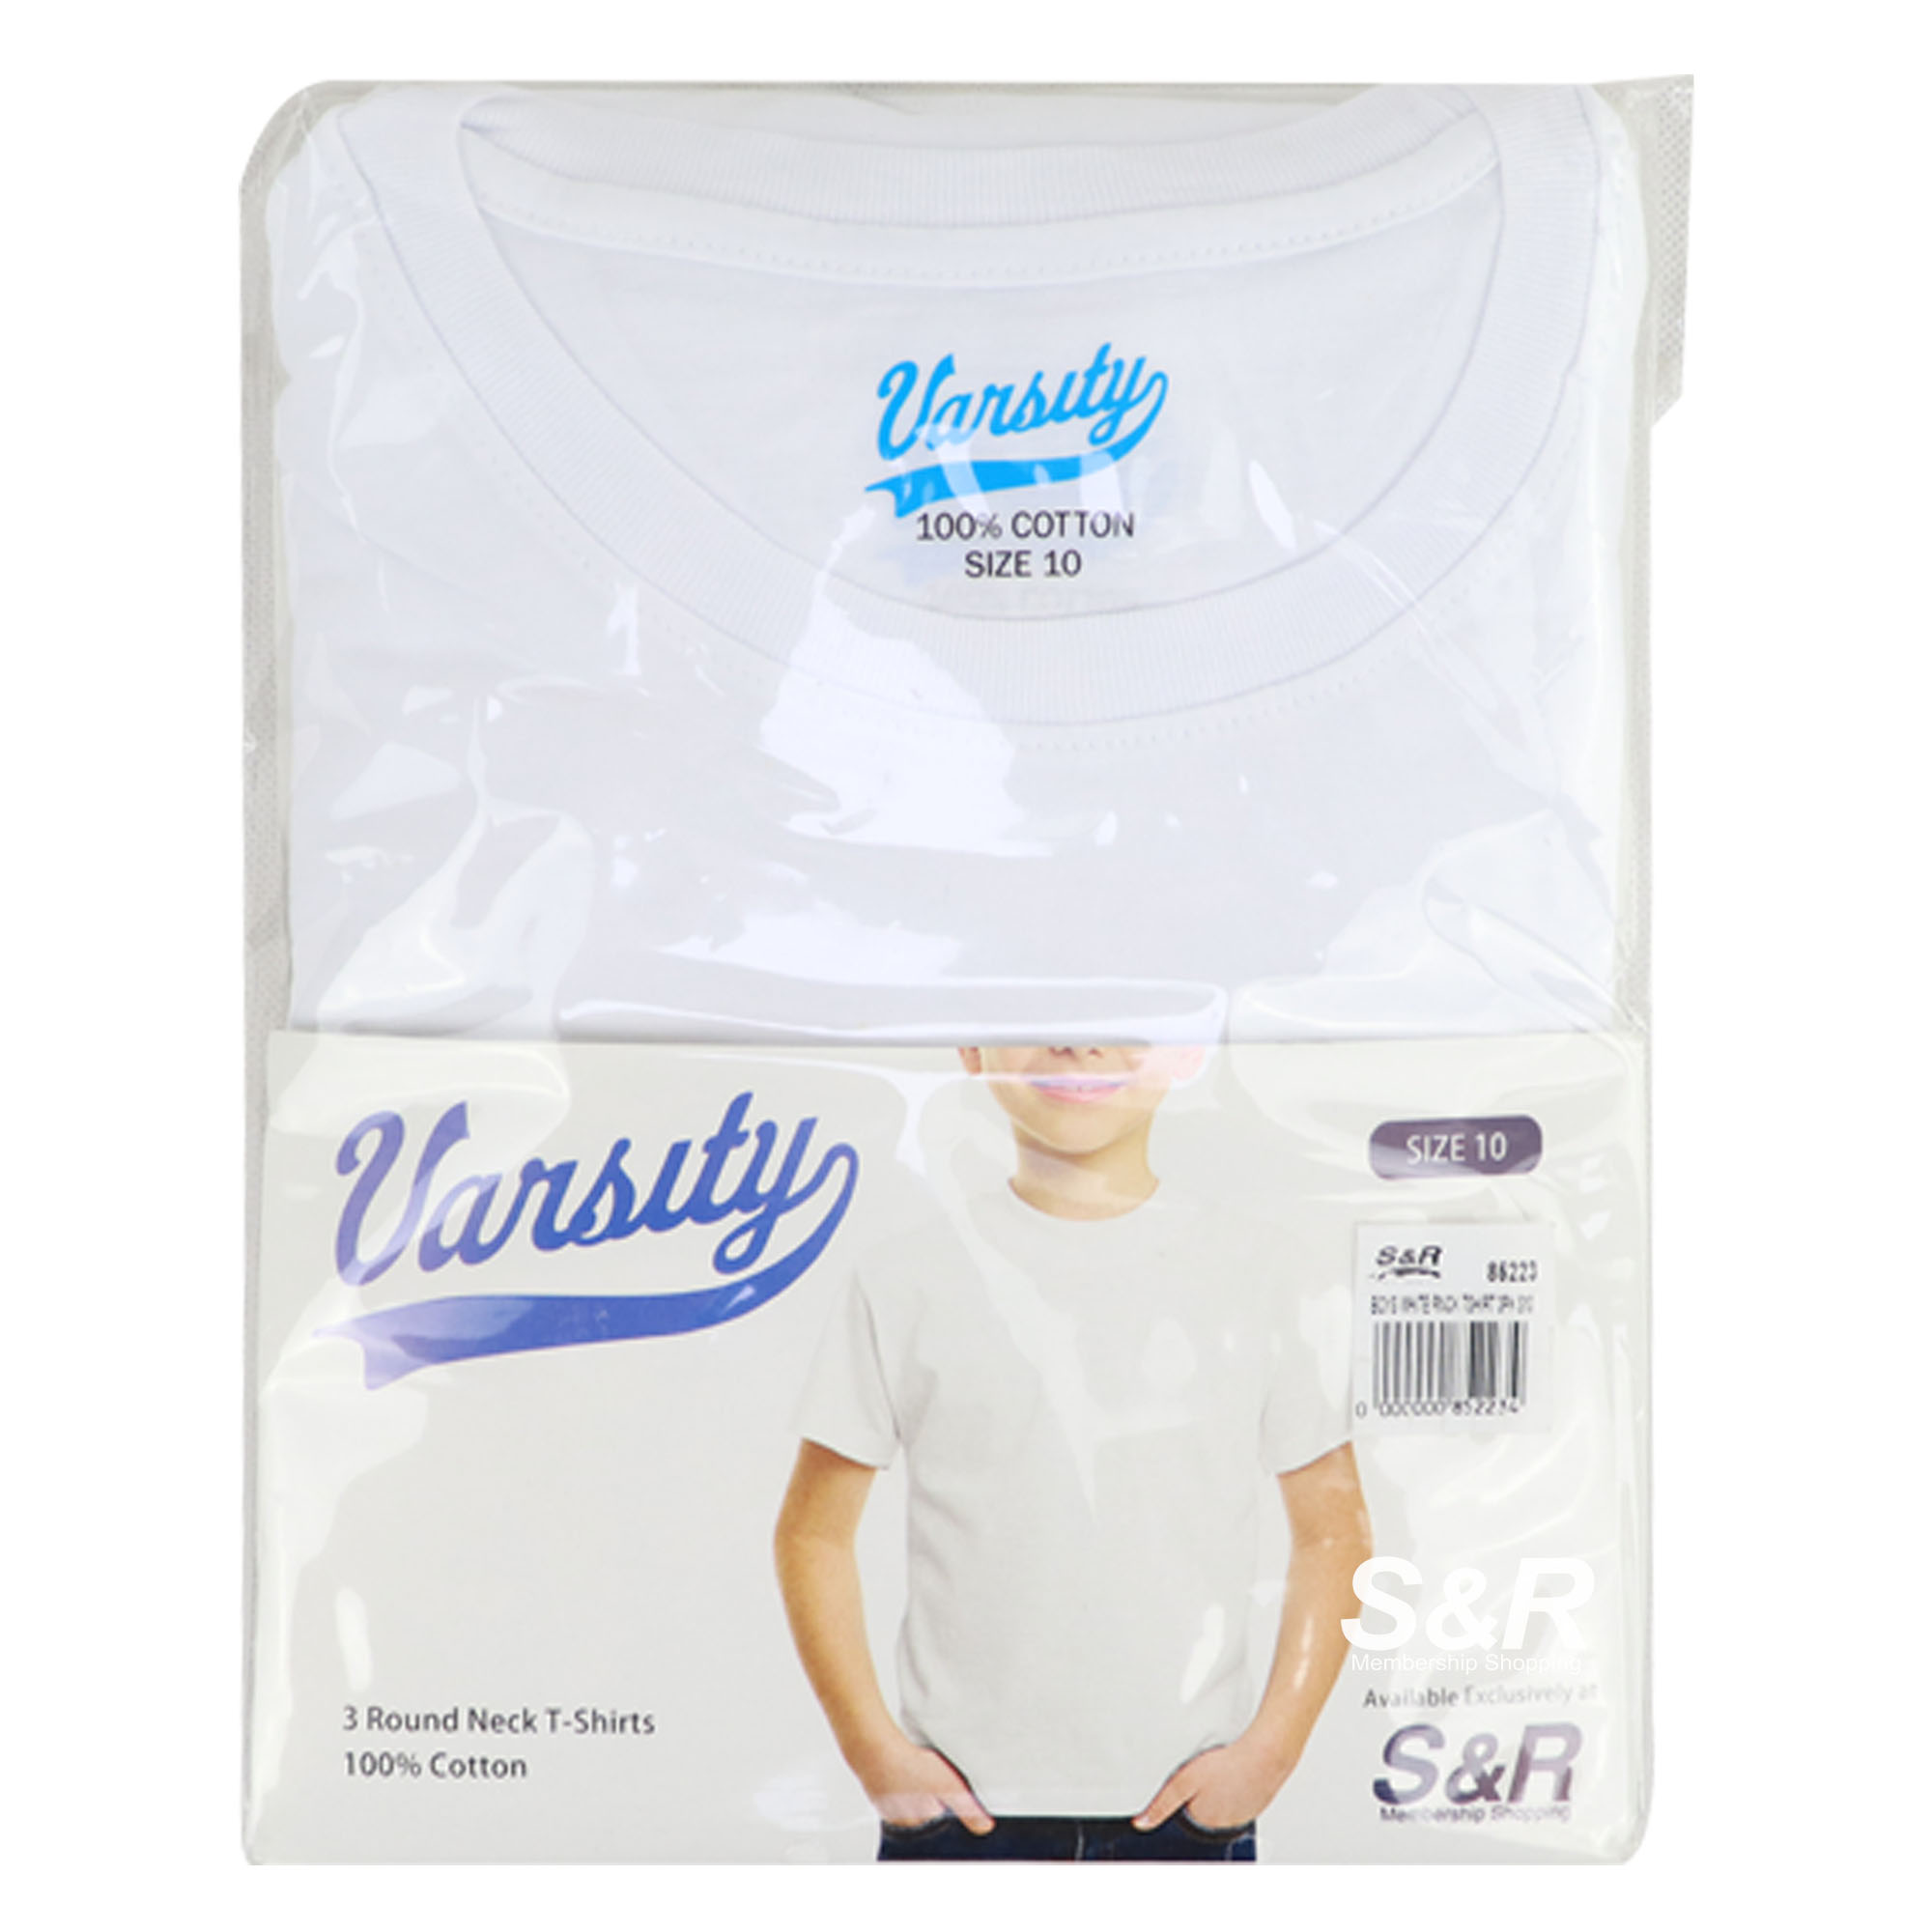 Varsity Boys Round Neck T-Shirts White Size 10 3pcs